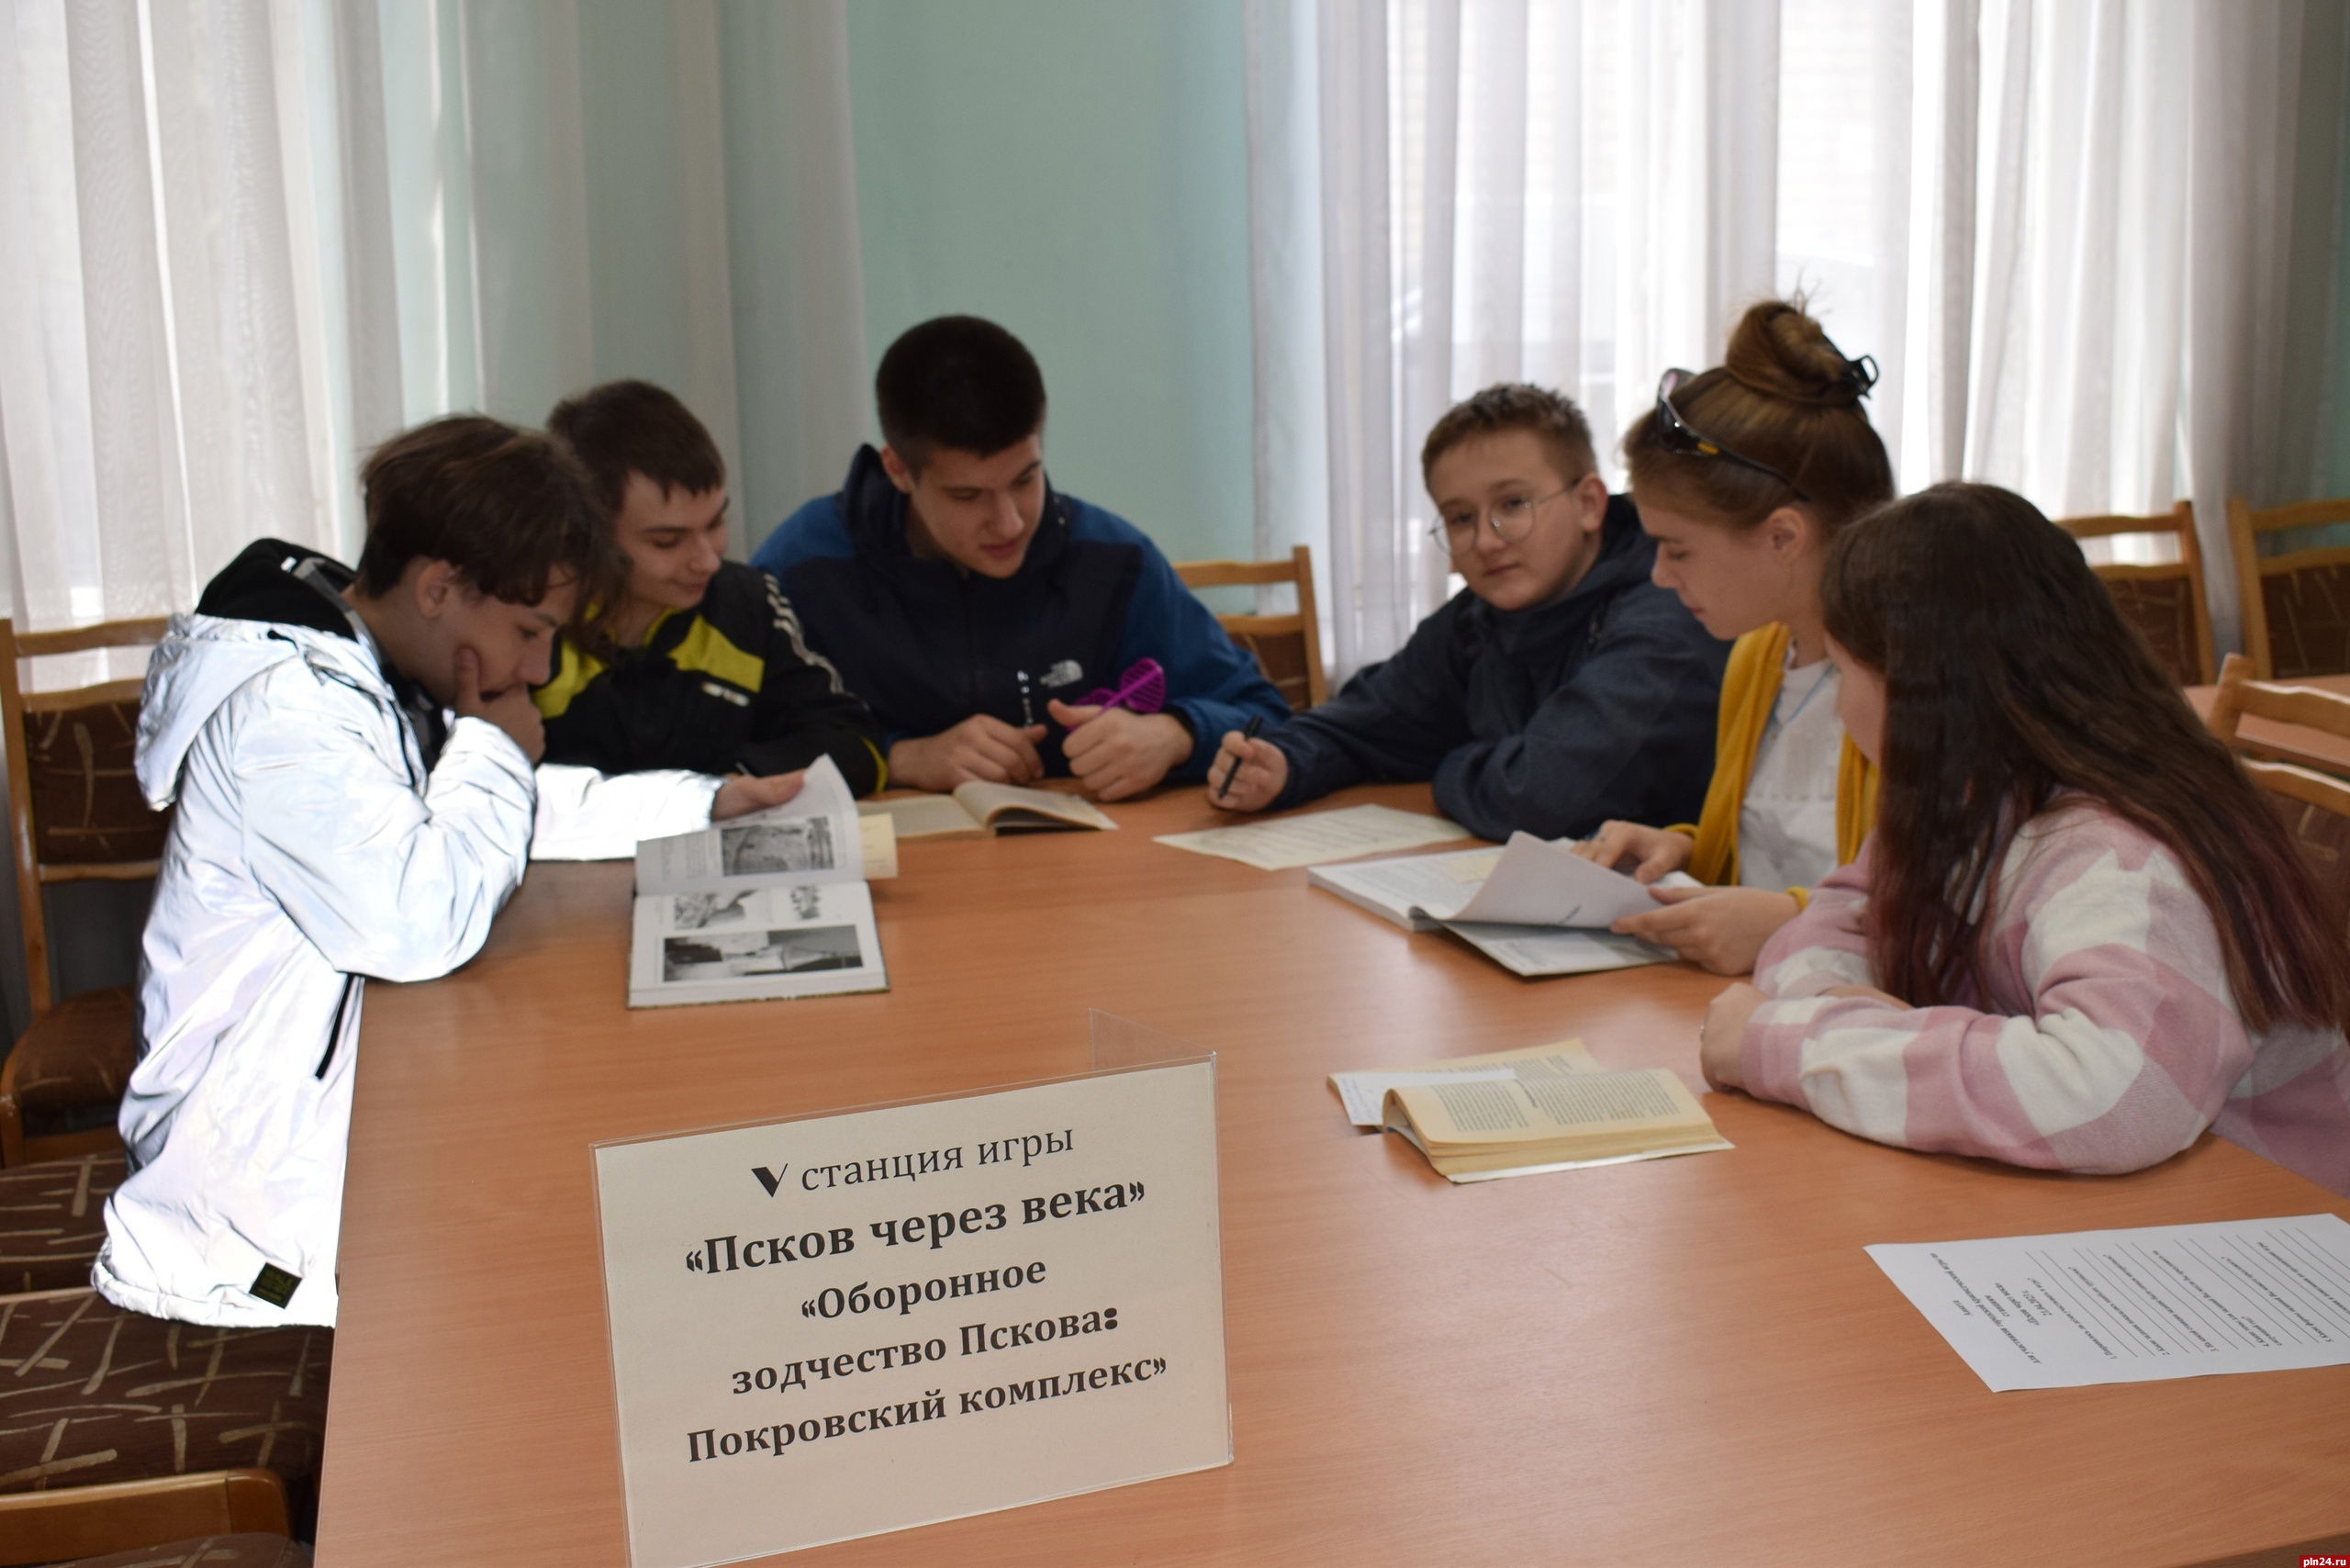 Игру по станциям на тему истории Пскова проверили для школьников